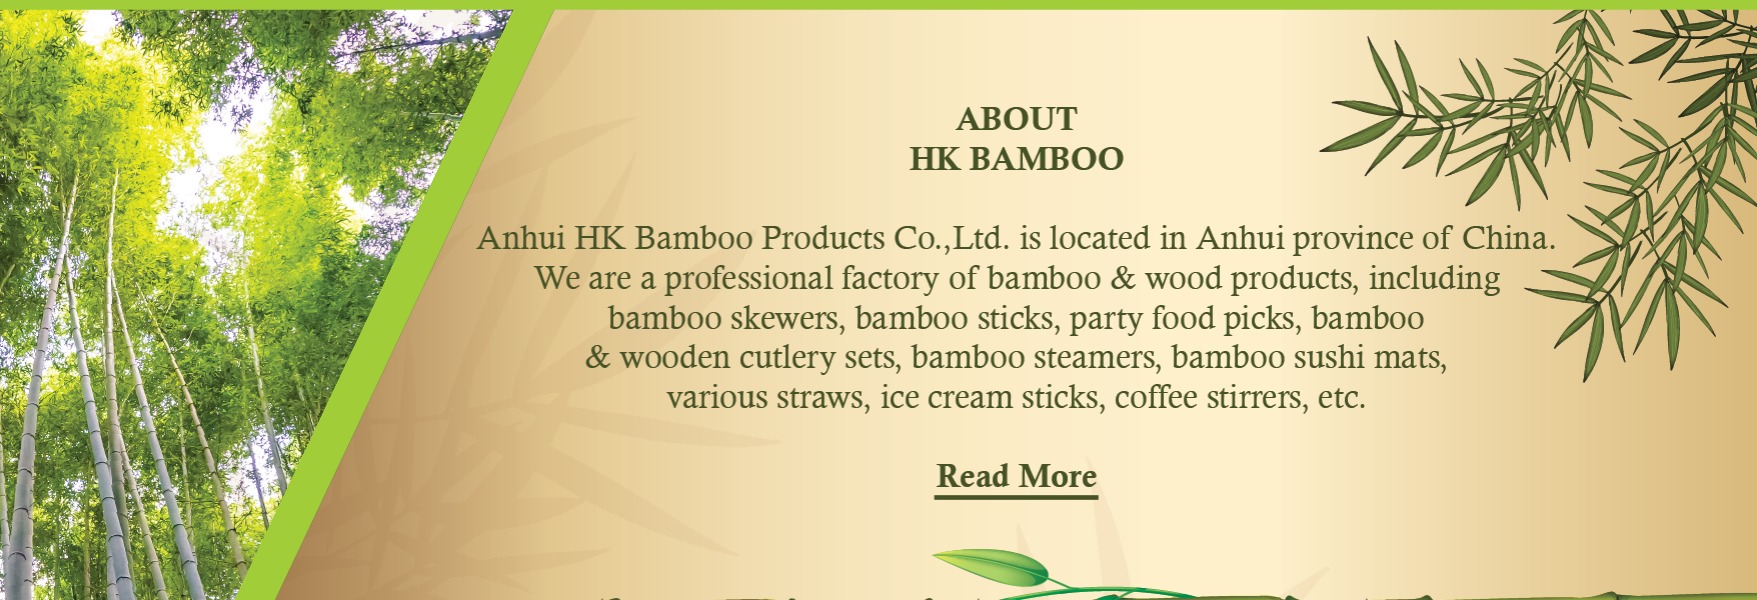 hk bamboo